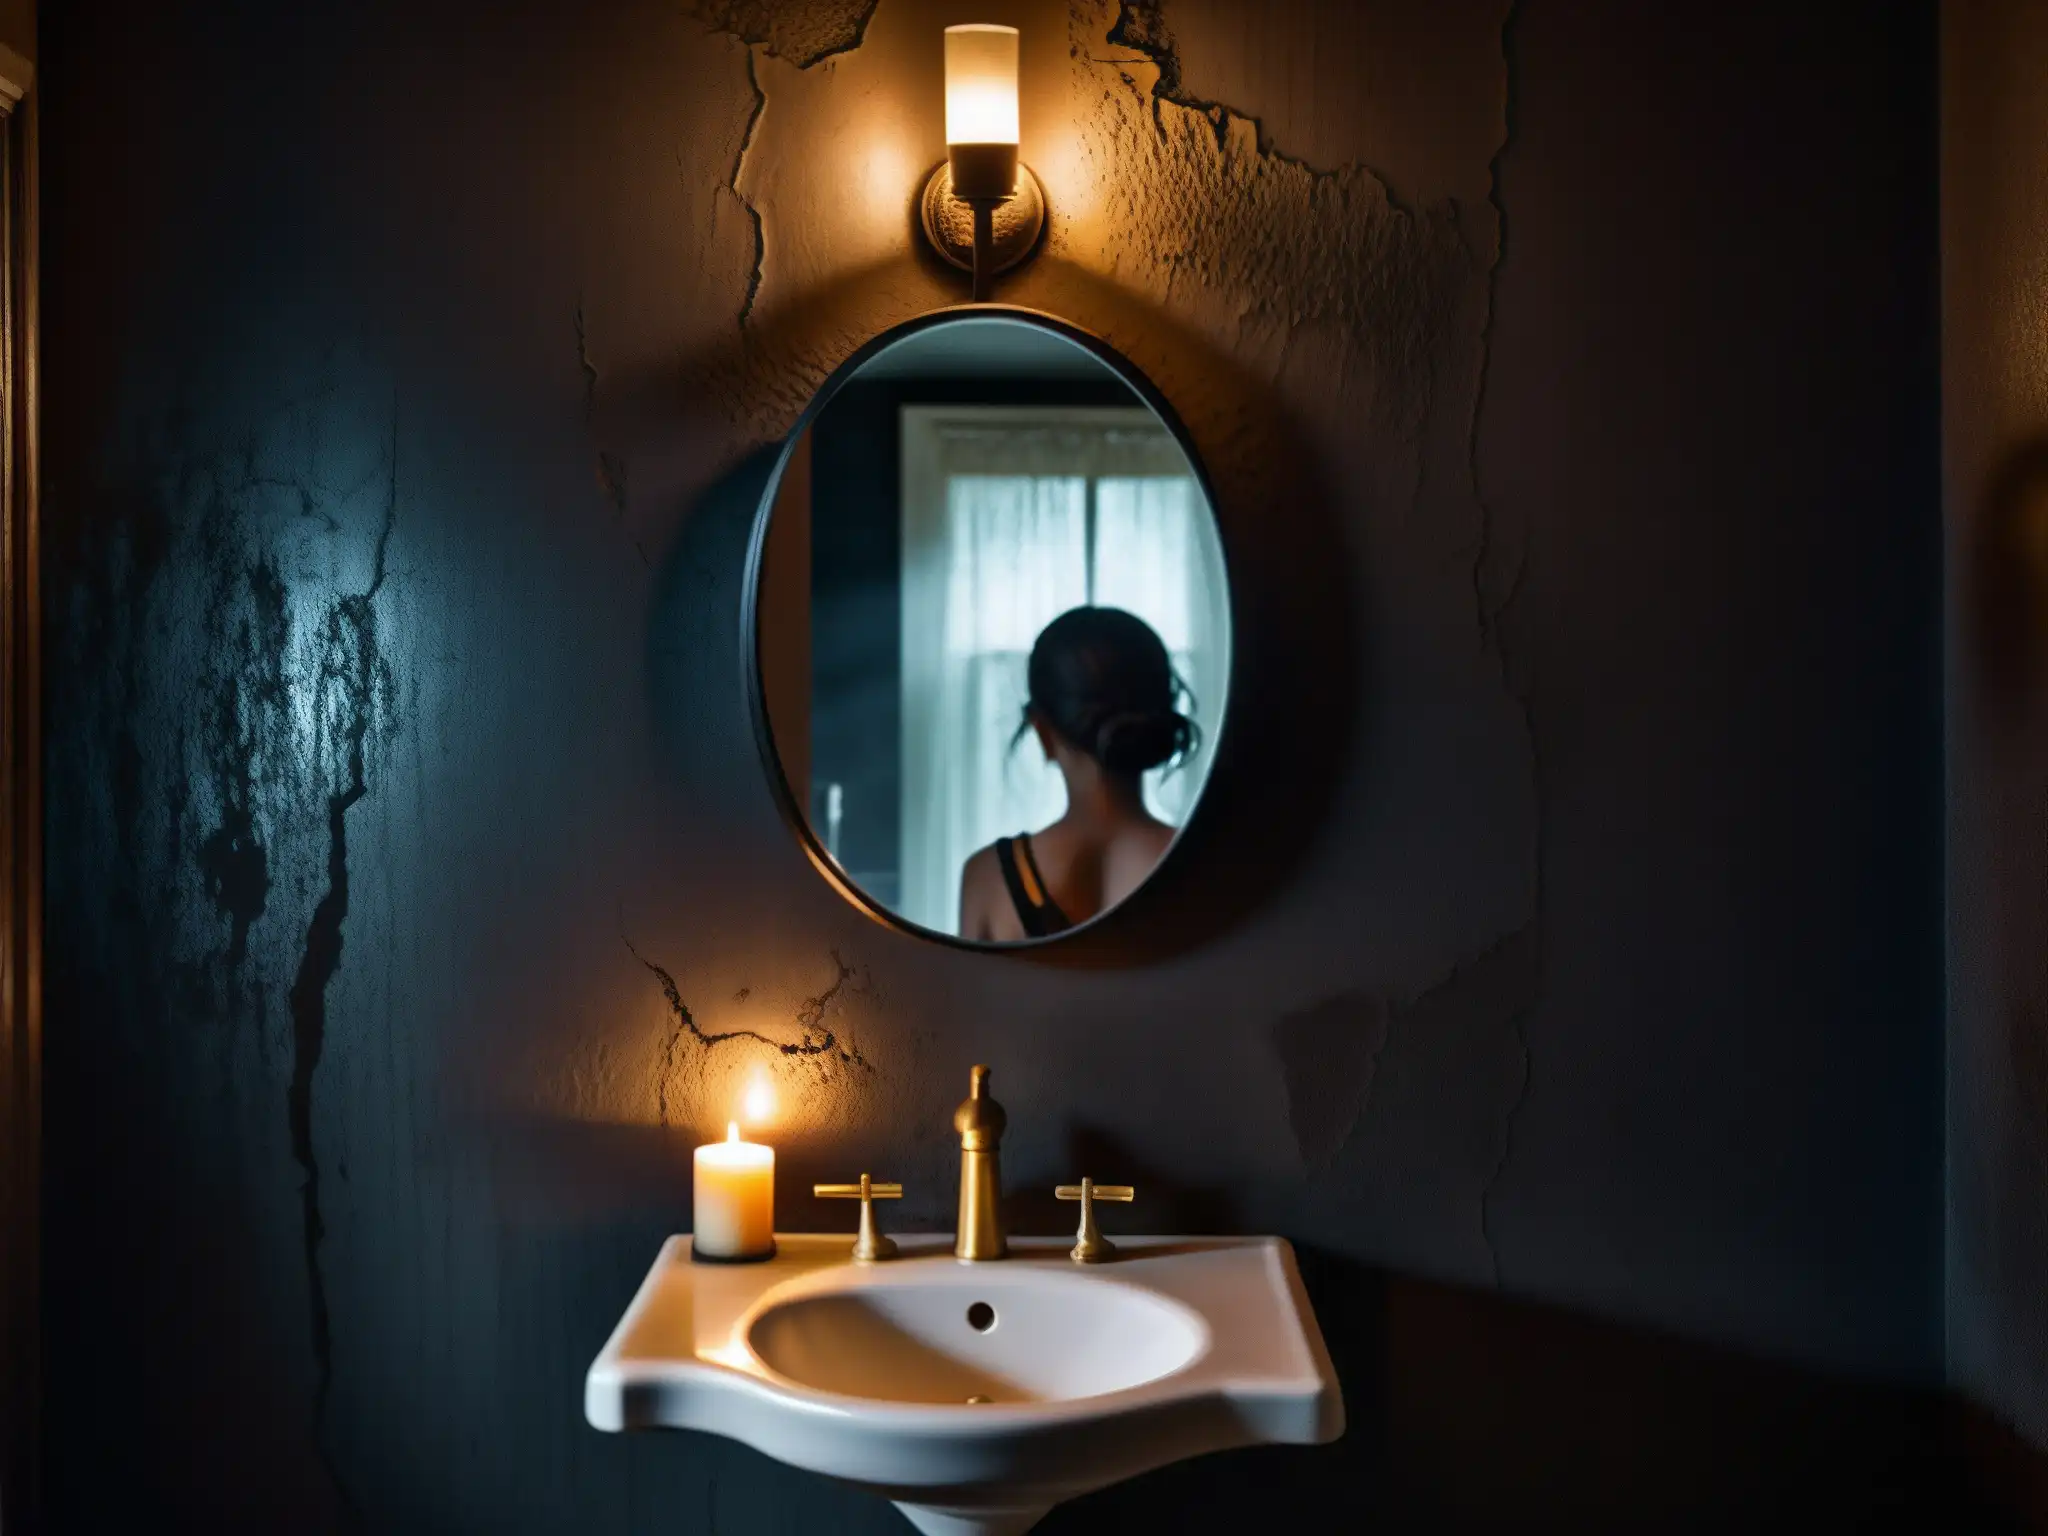 Un baño oscuro y sombrío con un espejo agrietado y envejecido, reflejando la tenue silueta de una mujer con ojos huecos y expresión inquietante